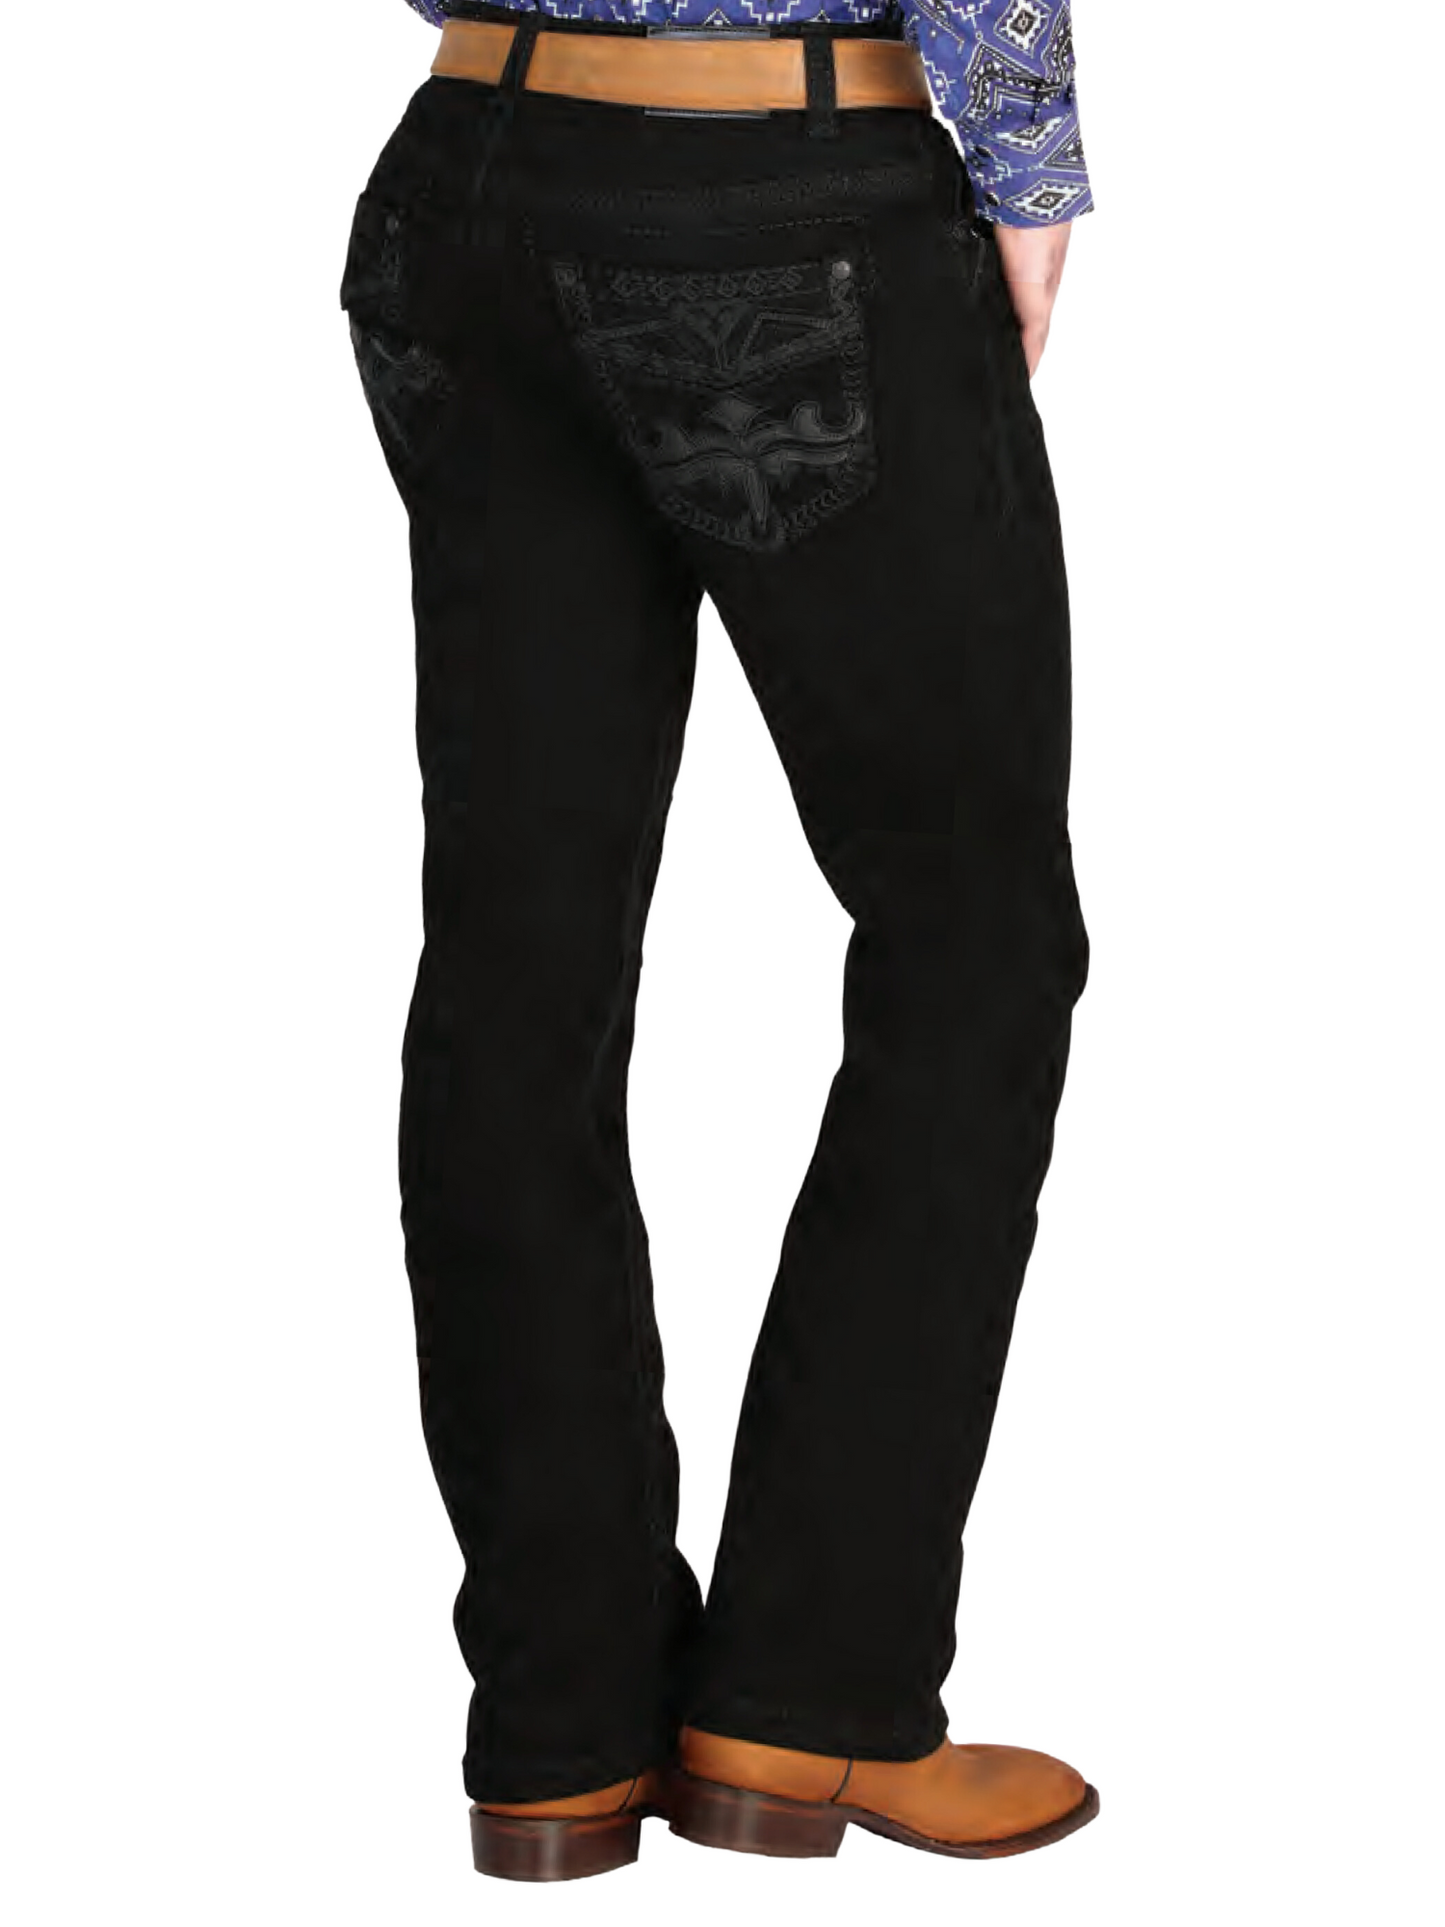 Black Boot Cut Denim Jeans for Men 'Centenario' - ID: 44837 Denim Jeans Centenario